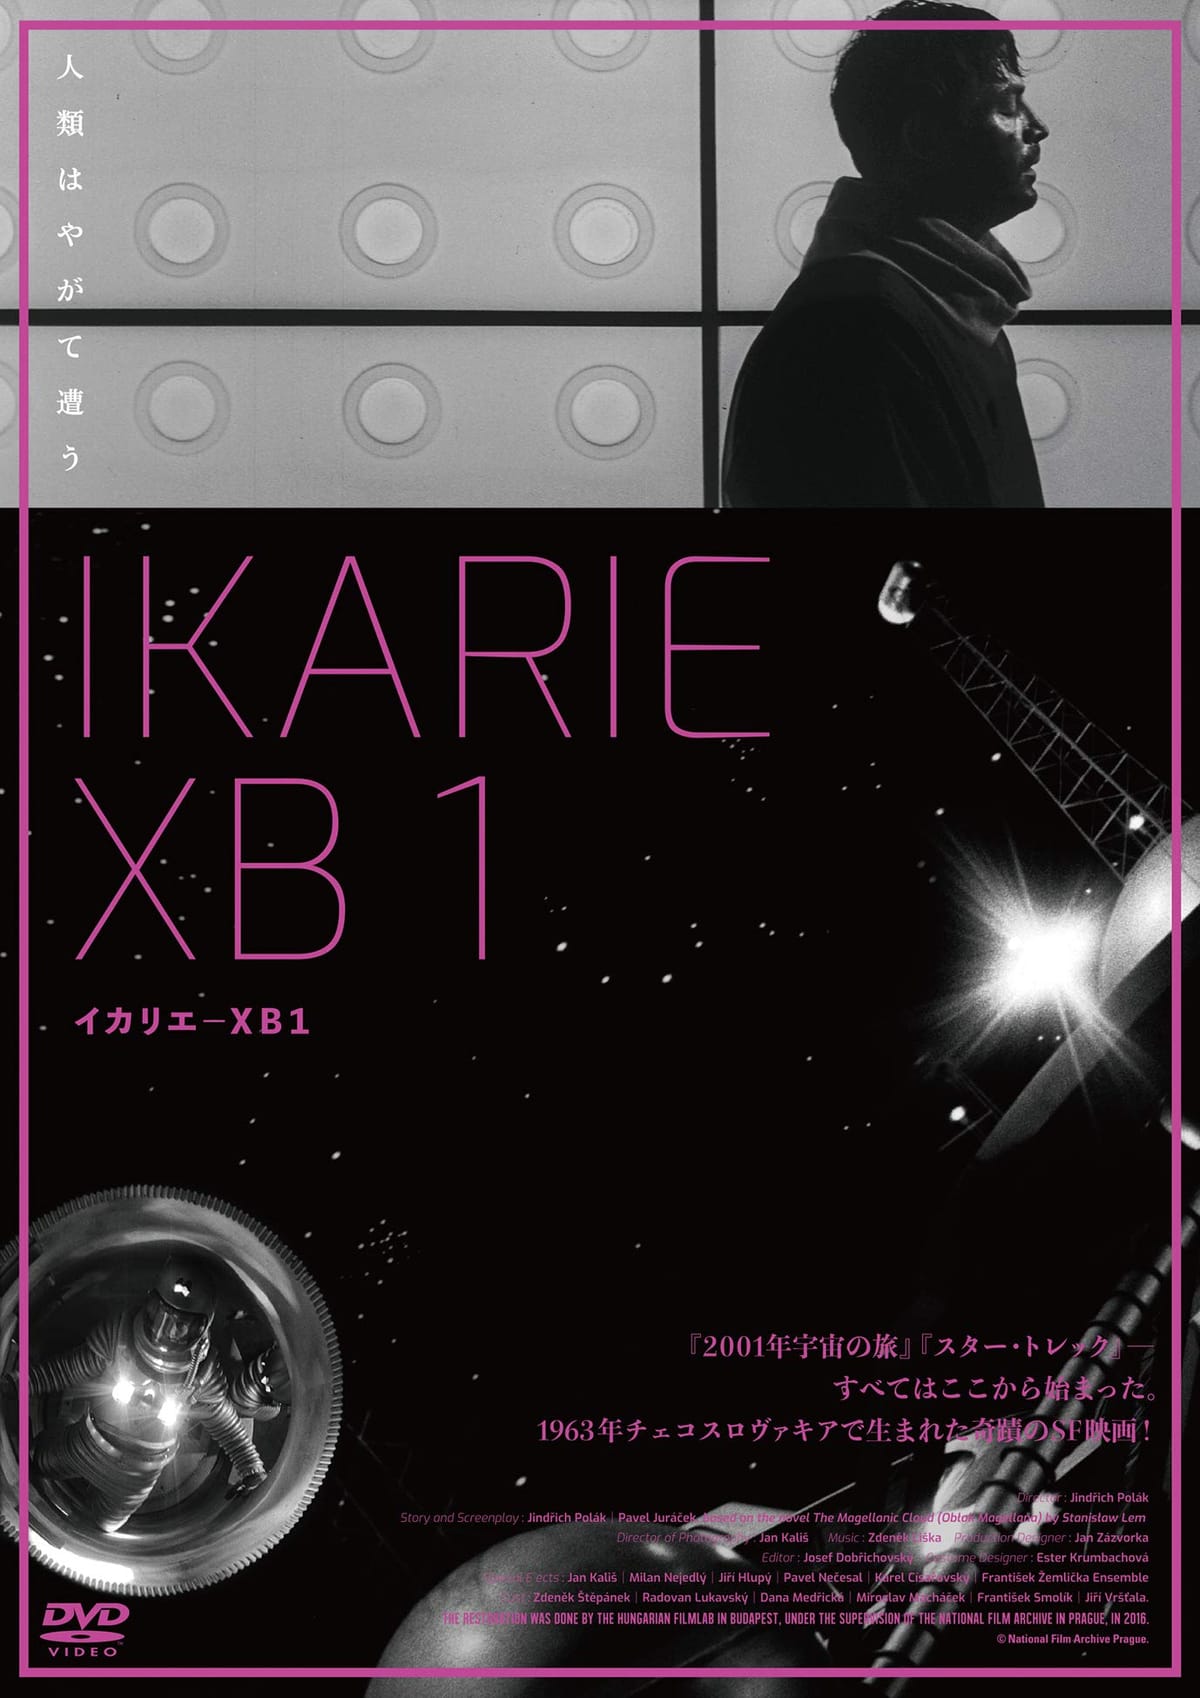 イカリエ-XB1 [DVD]